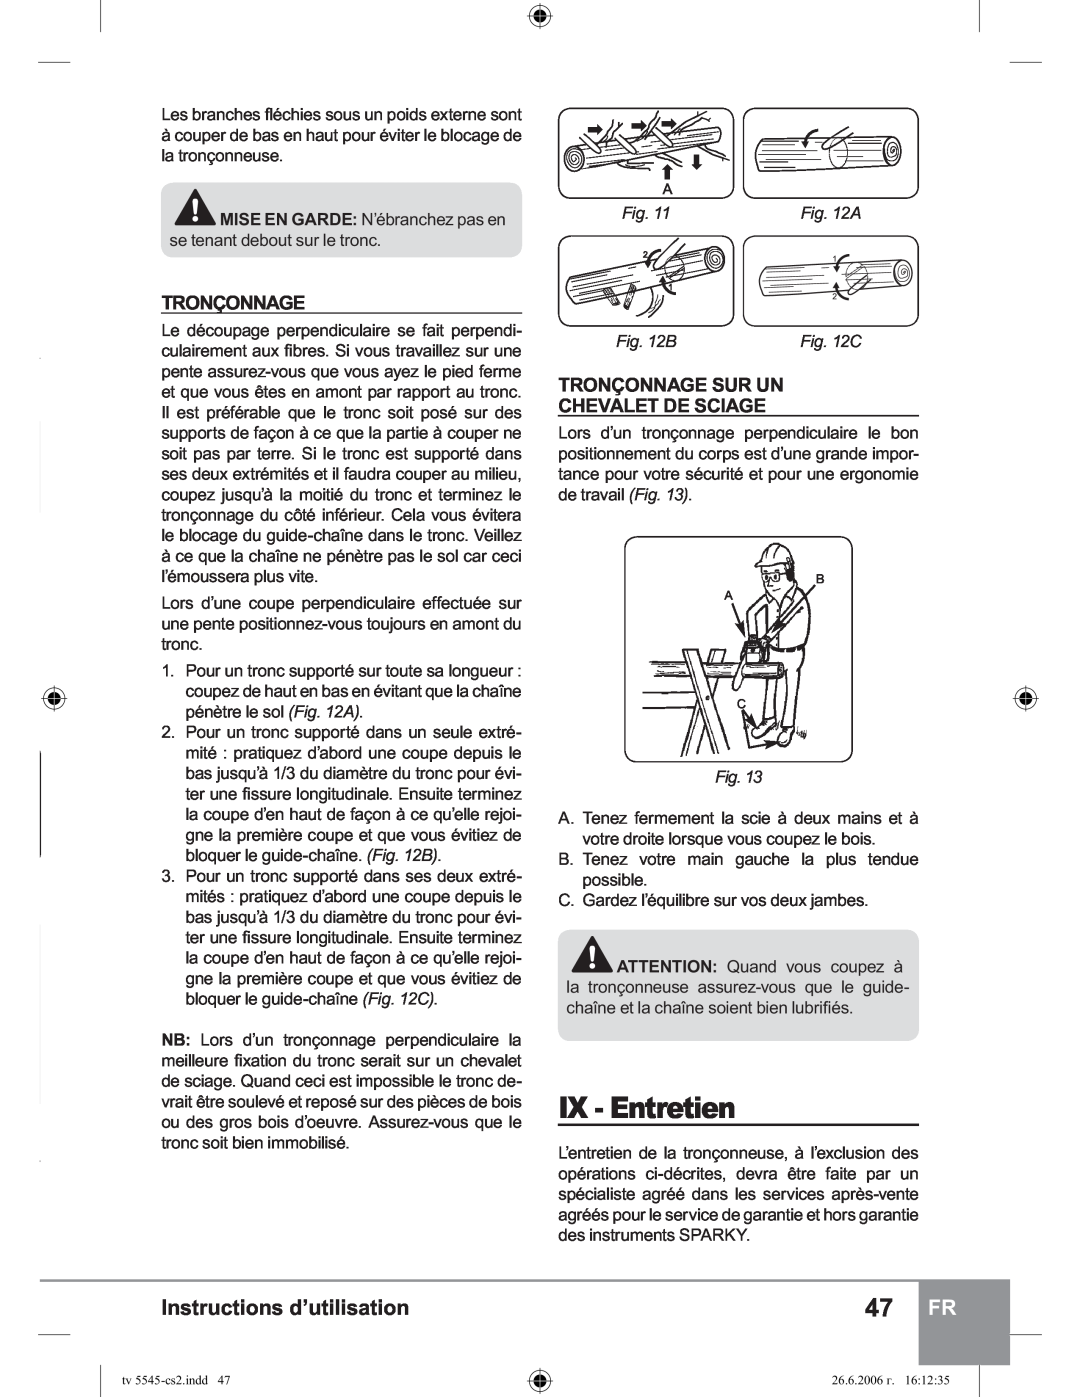 Sparky Group TV 5545 manual IX - Entretien, Tronçonnage Sur Un Chevalet De Sciage, Instructions d’utilisation, B, A 